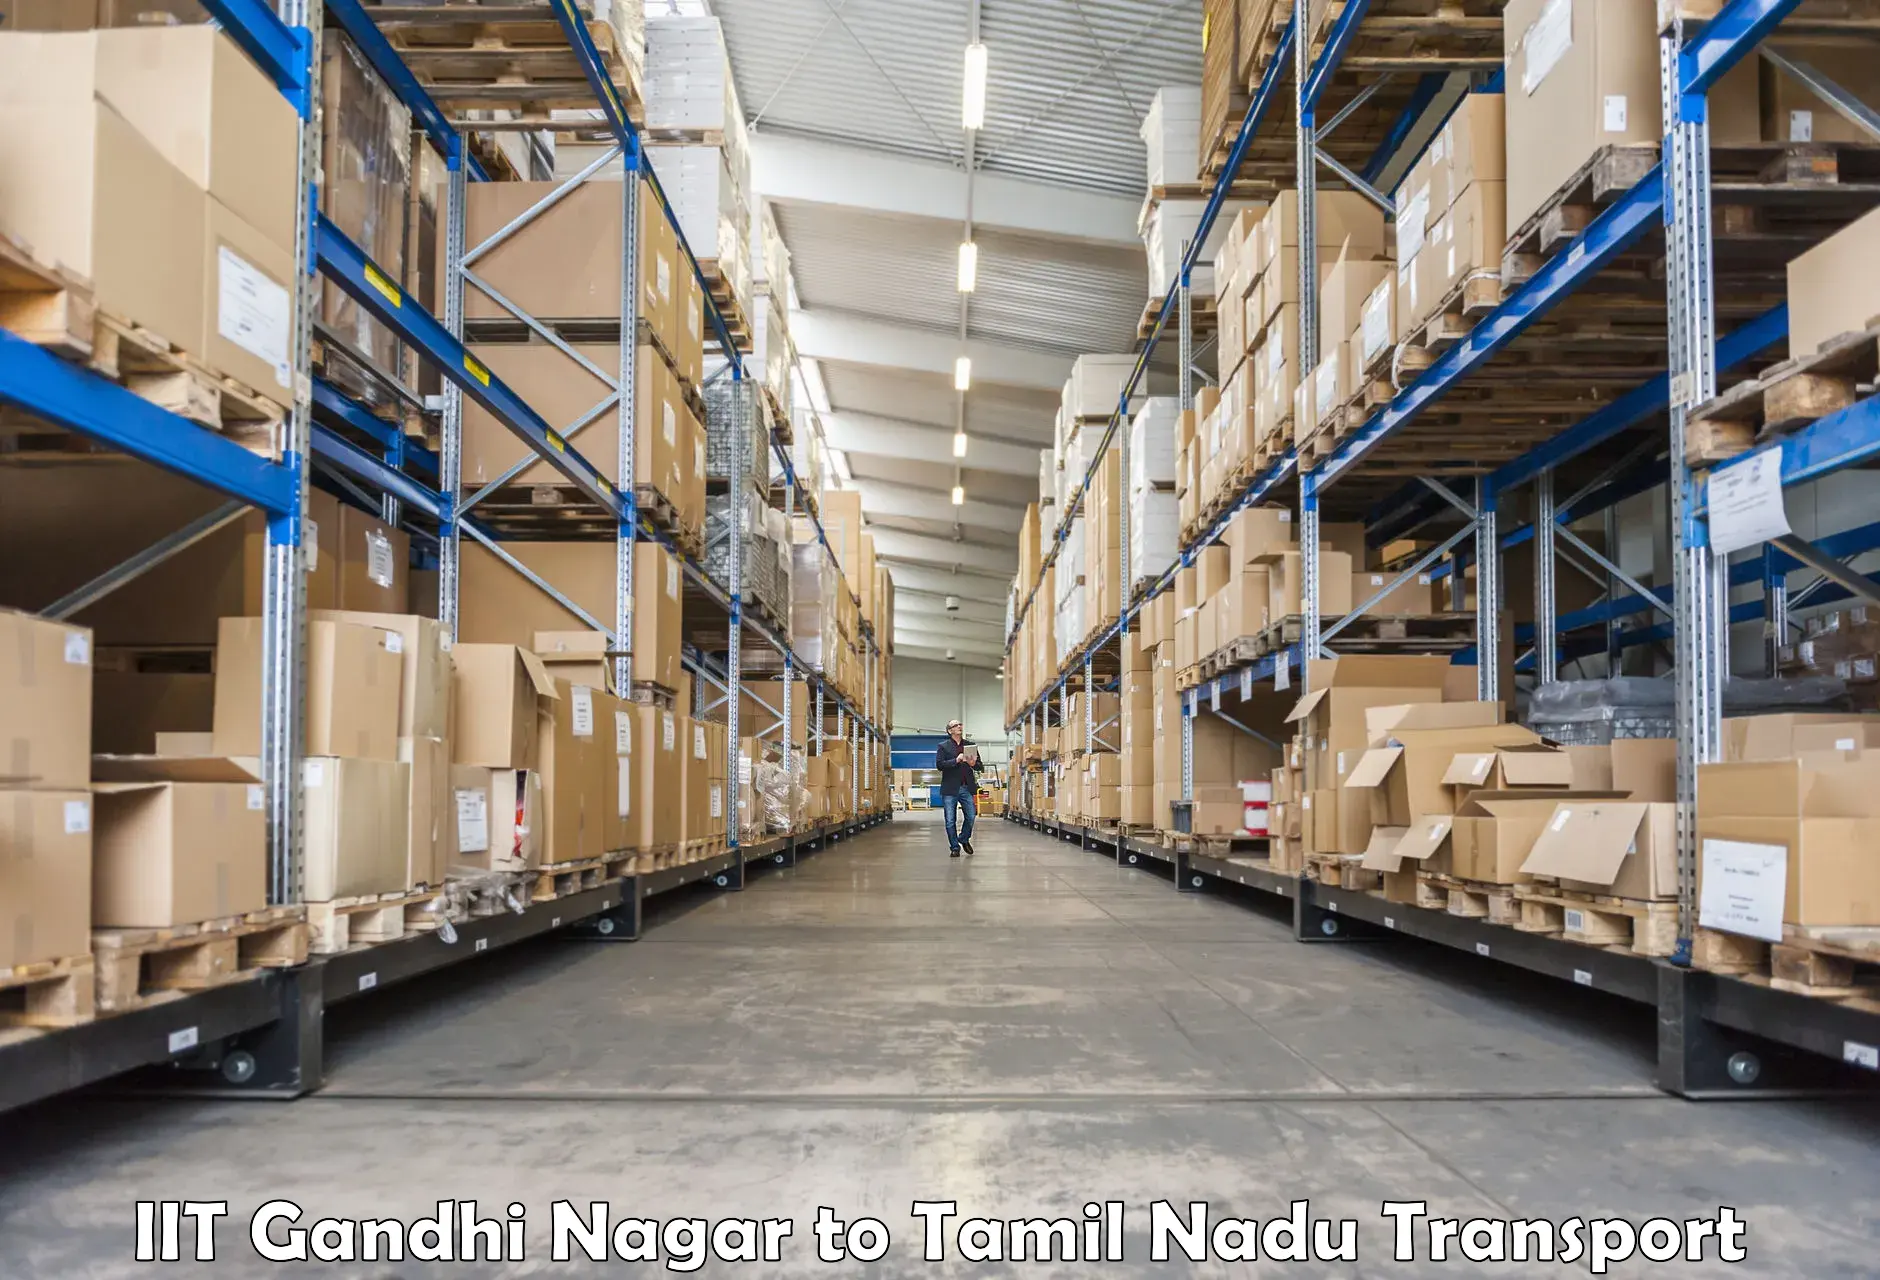 Furniture transport service IIT Gandhi Nagar to Chennai